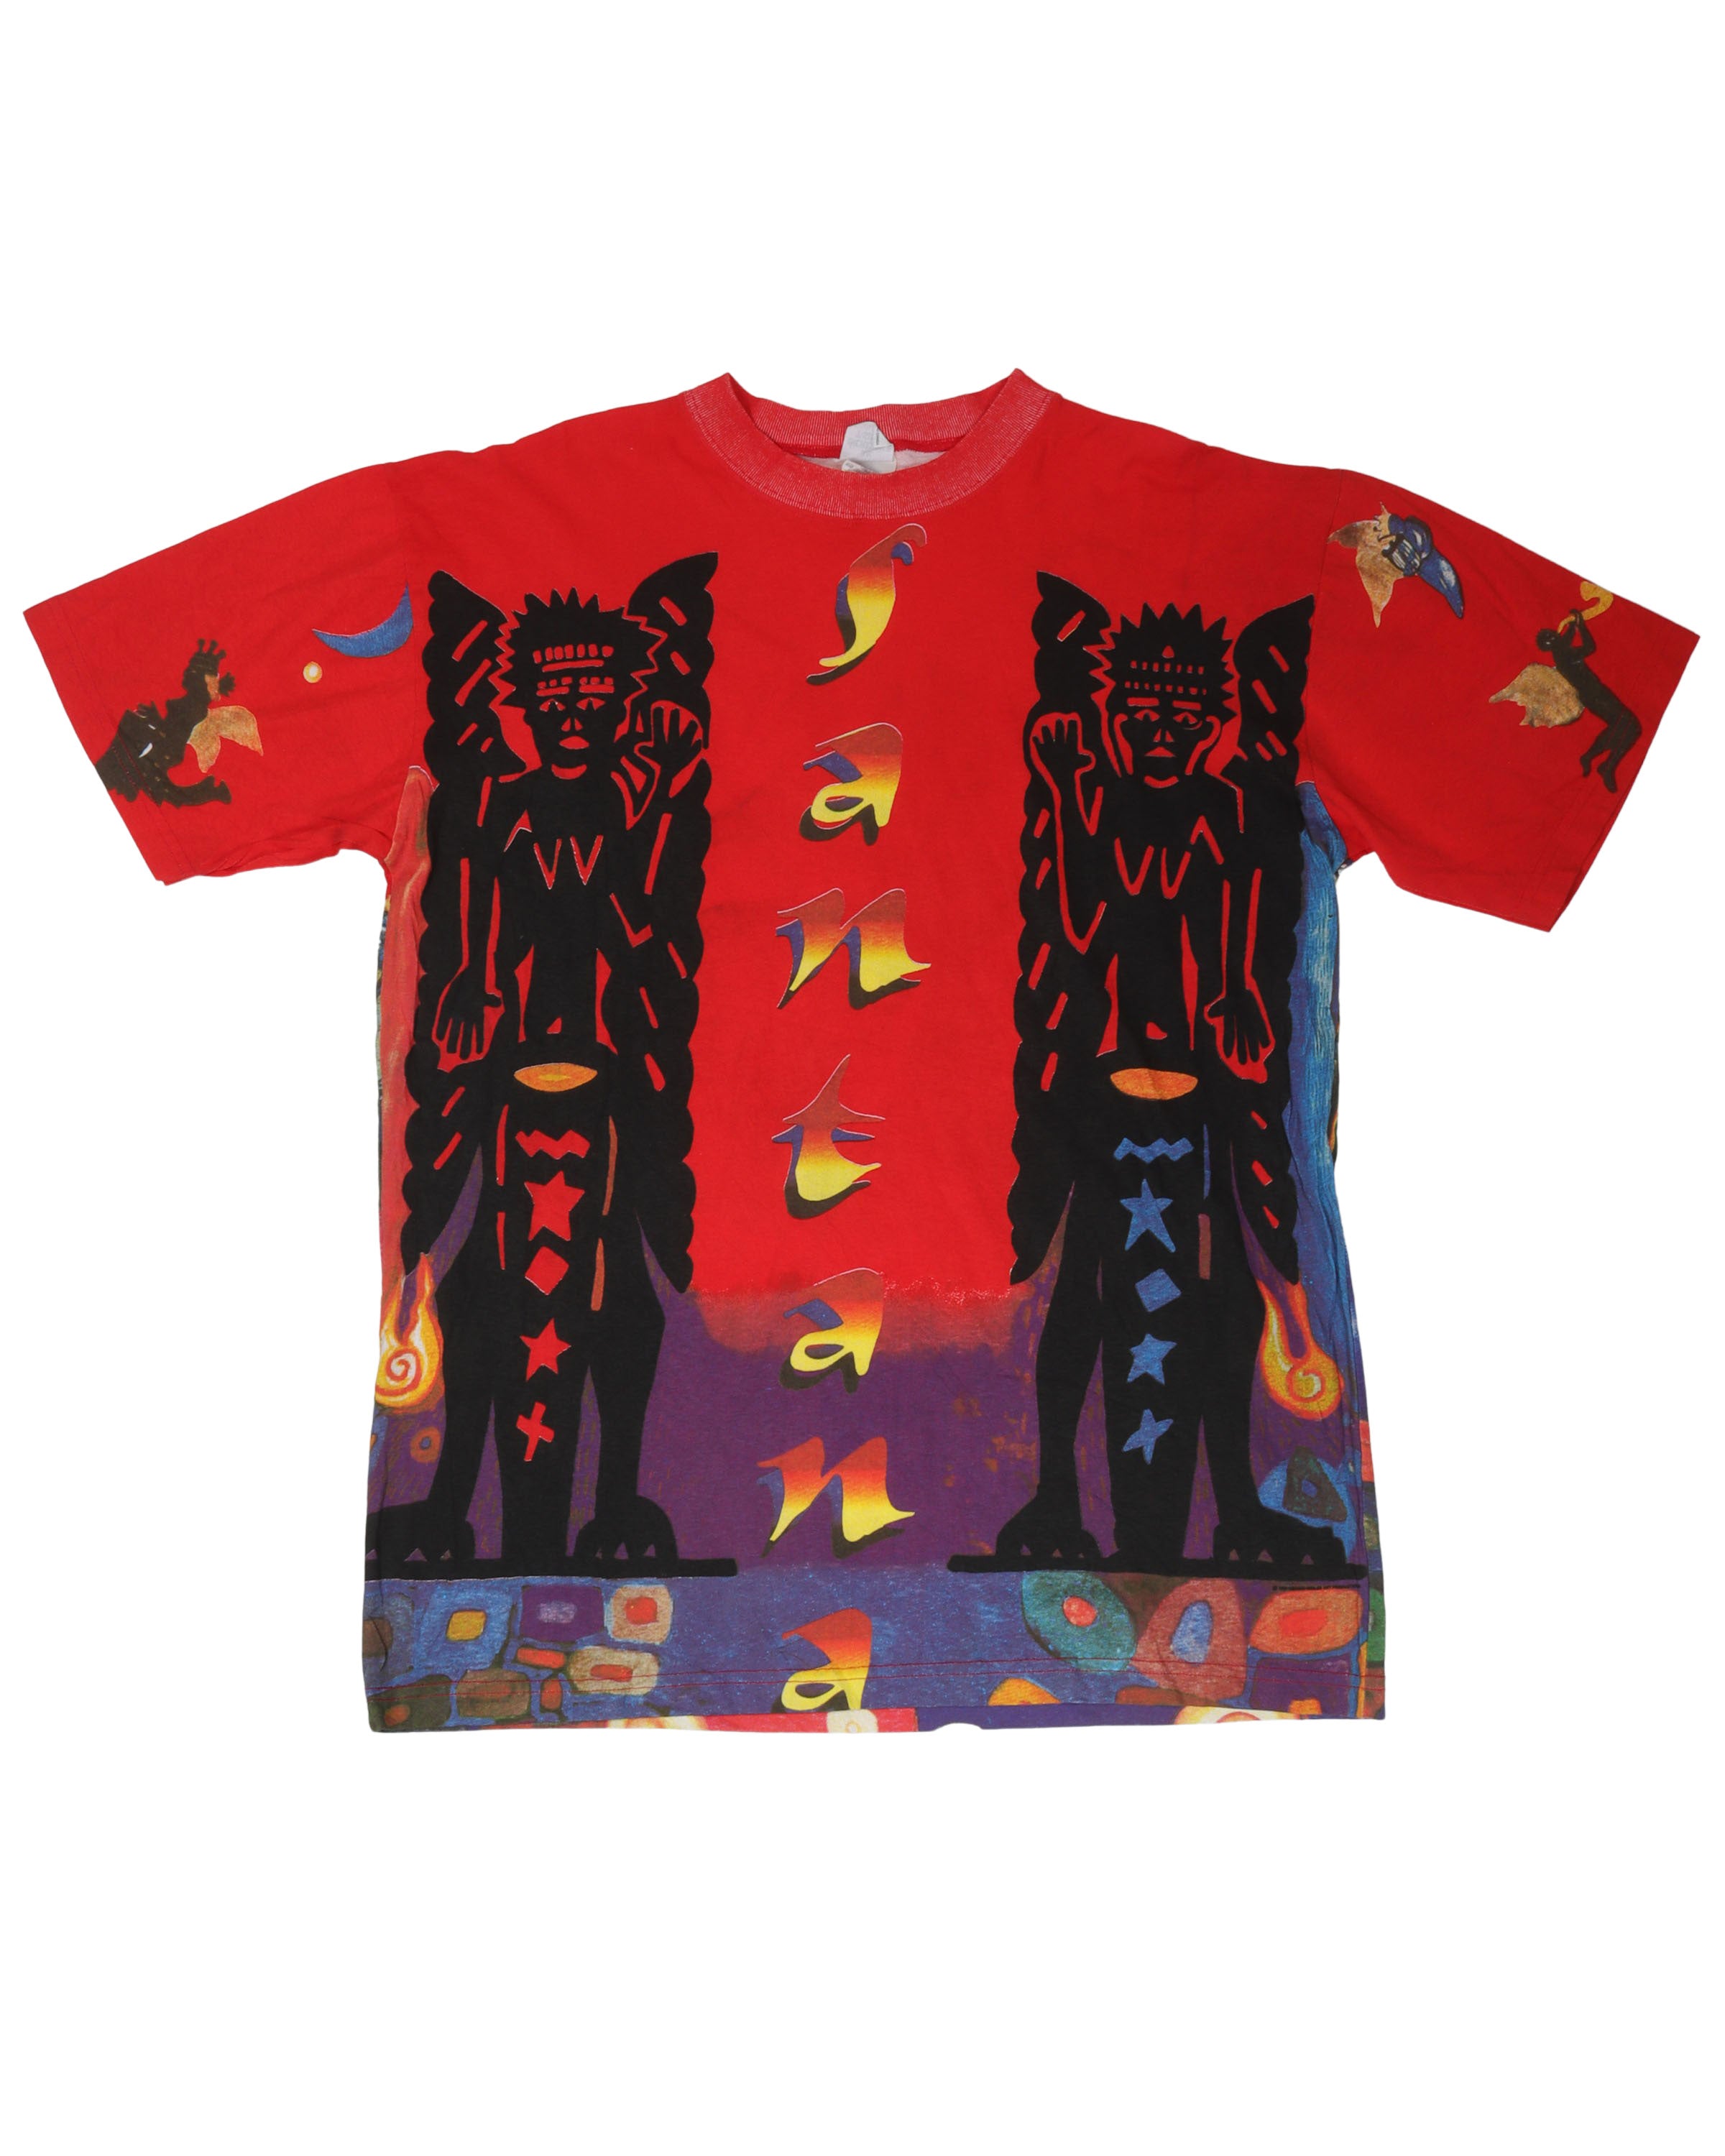 Santana All Over Print T-Shirt